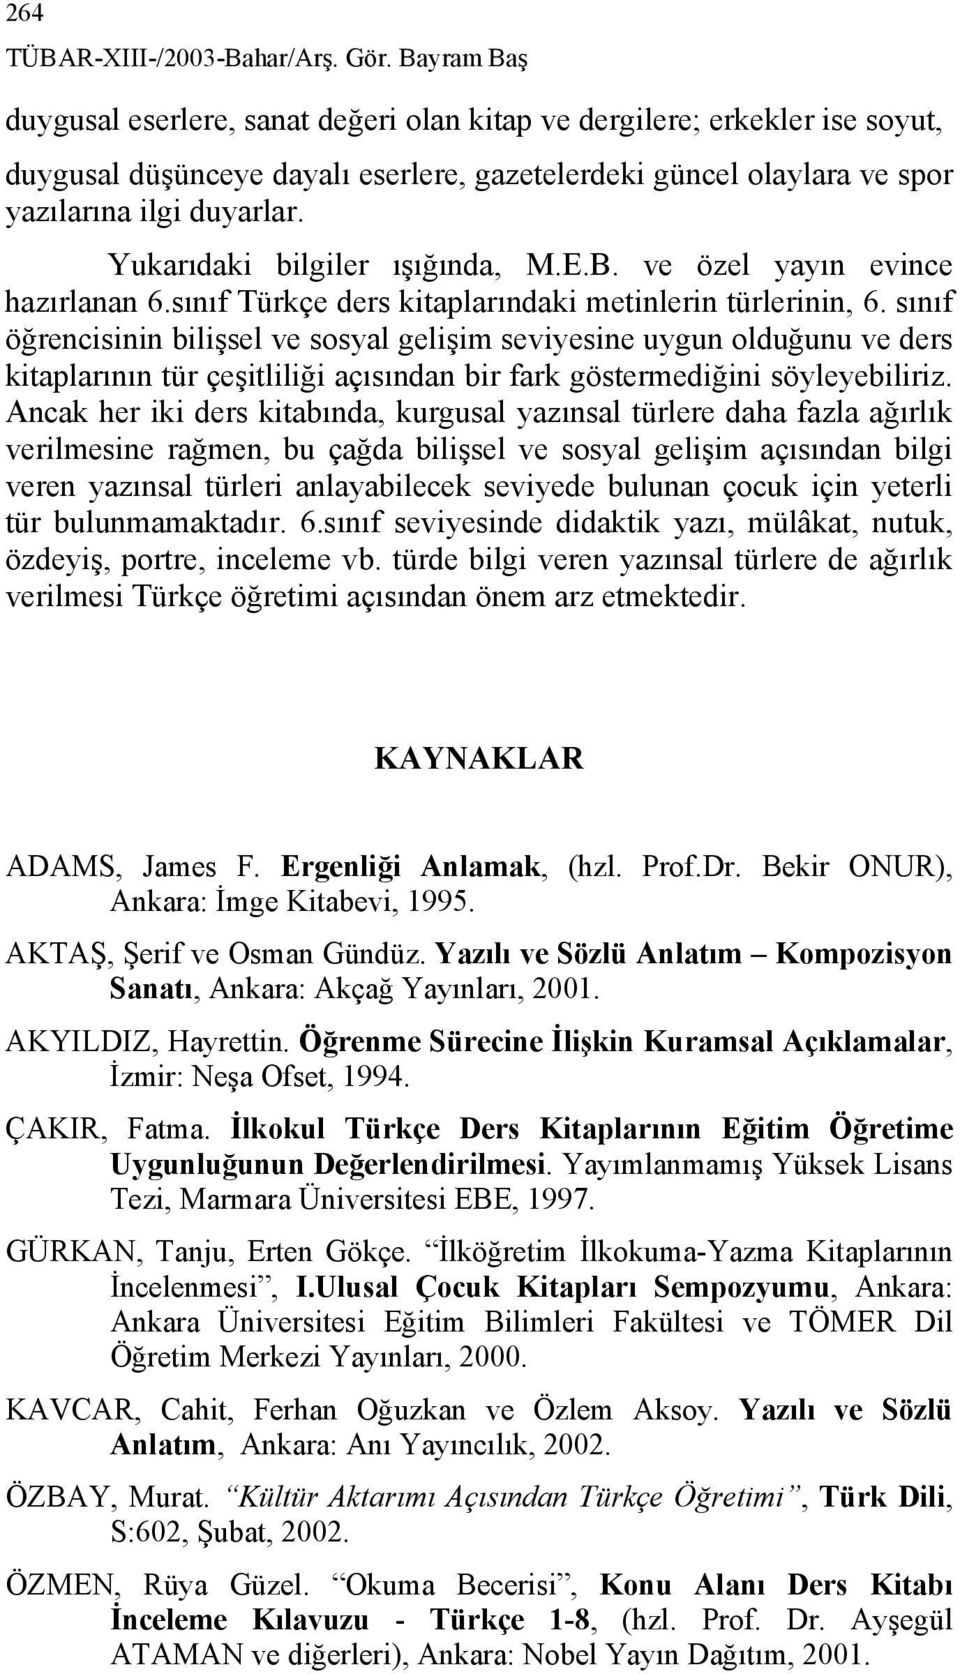 Yukarıdaki bilgiler ışığında, M.E.B. ve özel yayın evince hazırlanan 6.sınıf Türkçe ders kitaplarındaki metinlerin türlerinin, 6.